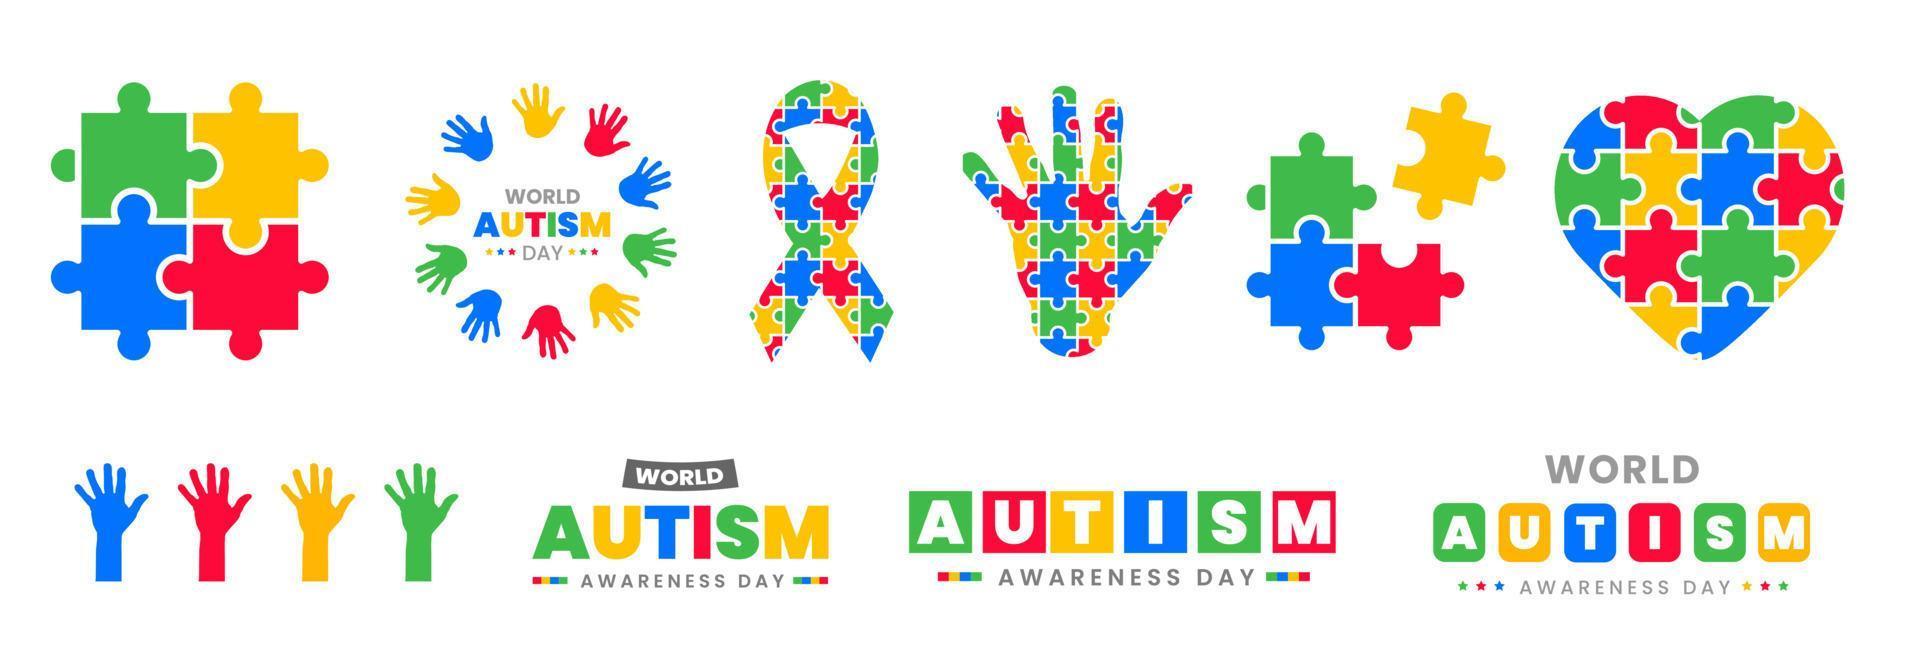 wereld autisme dag achtergrond. 2 april wereld autisme bewustzijn dag achtergrond 2022. wereld autisme dag achtergrond ontwerp vector